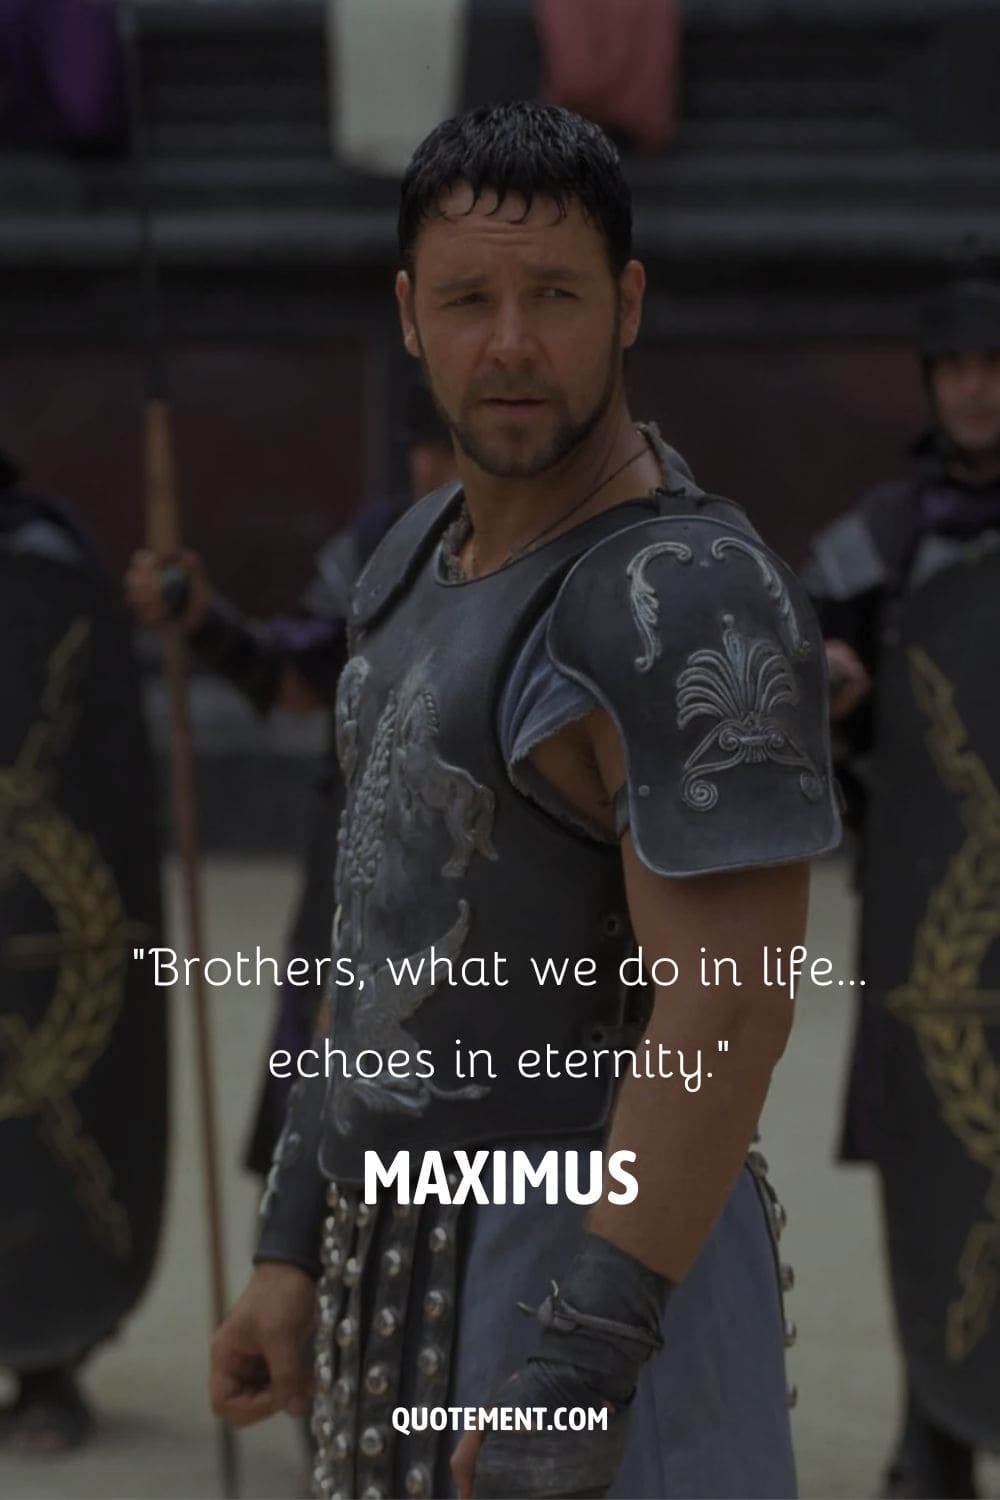 Image of gladiator Maximus representing the best gladiator quote.